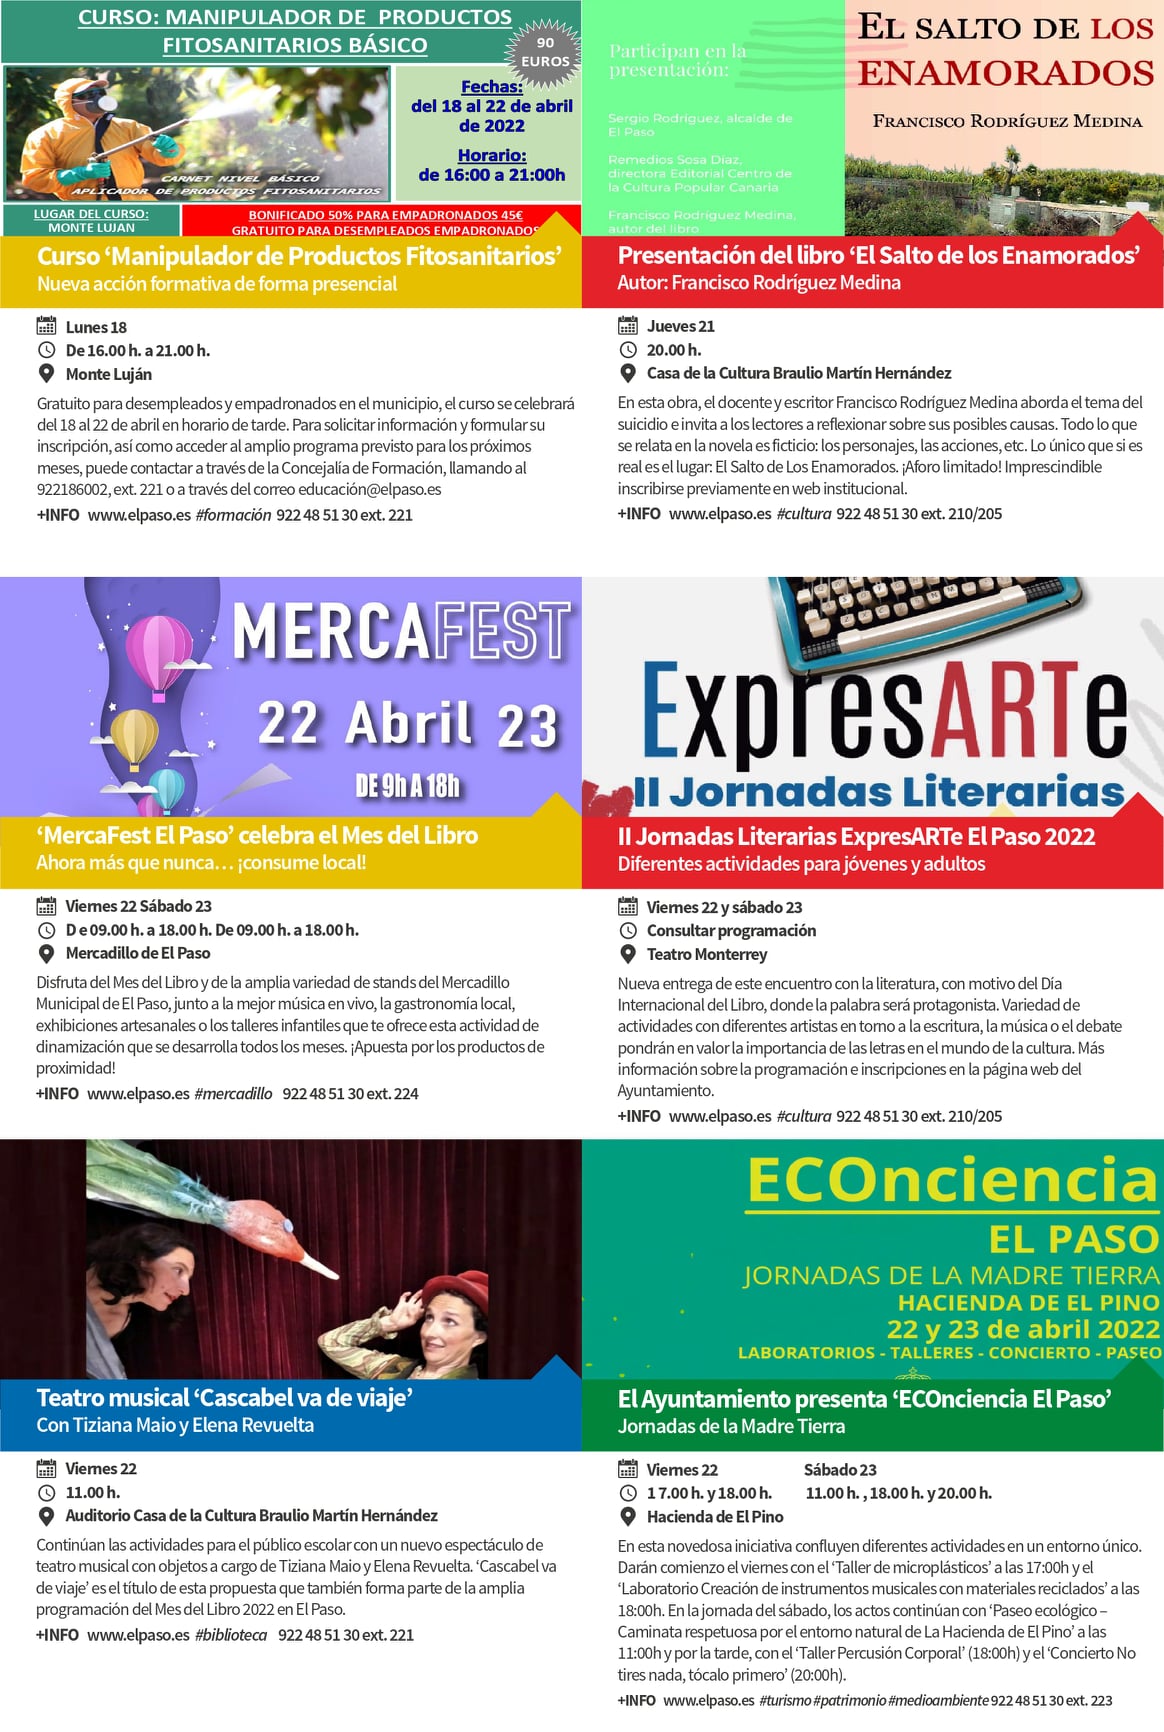 el-paso-agenda-cultural-abril-2022-04